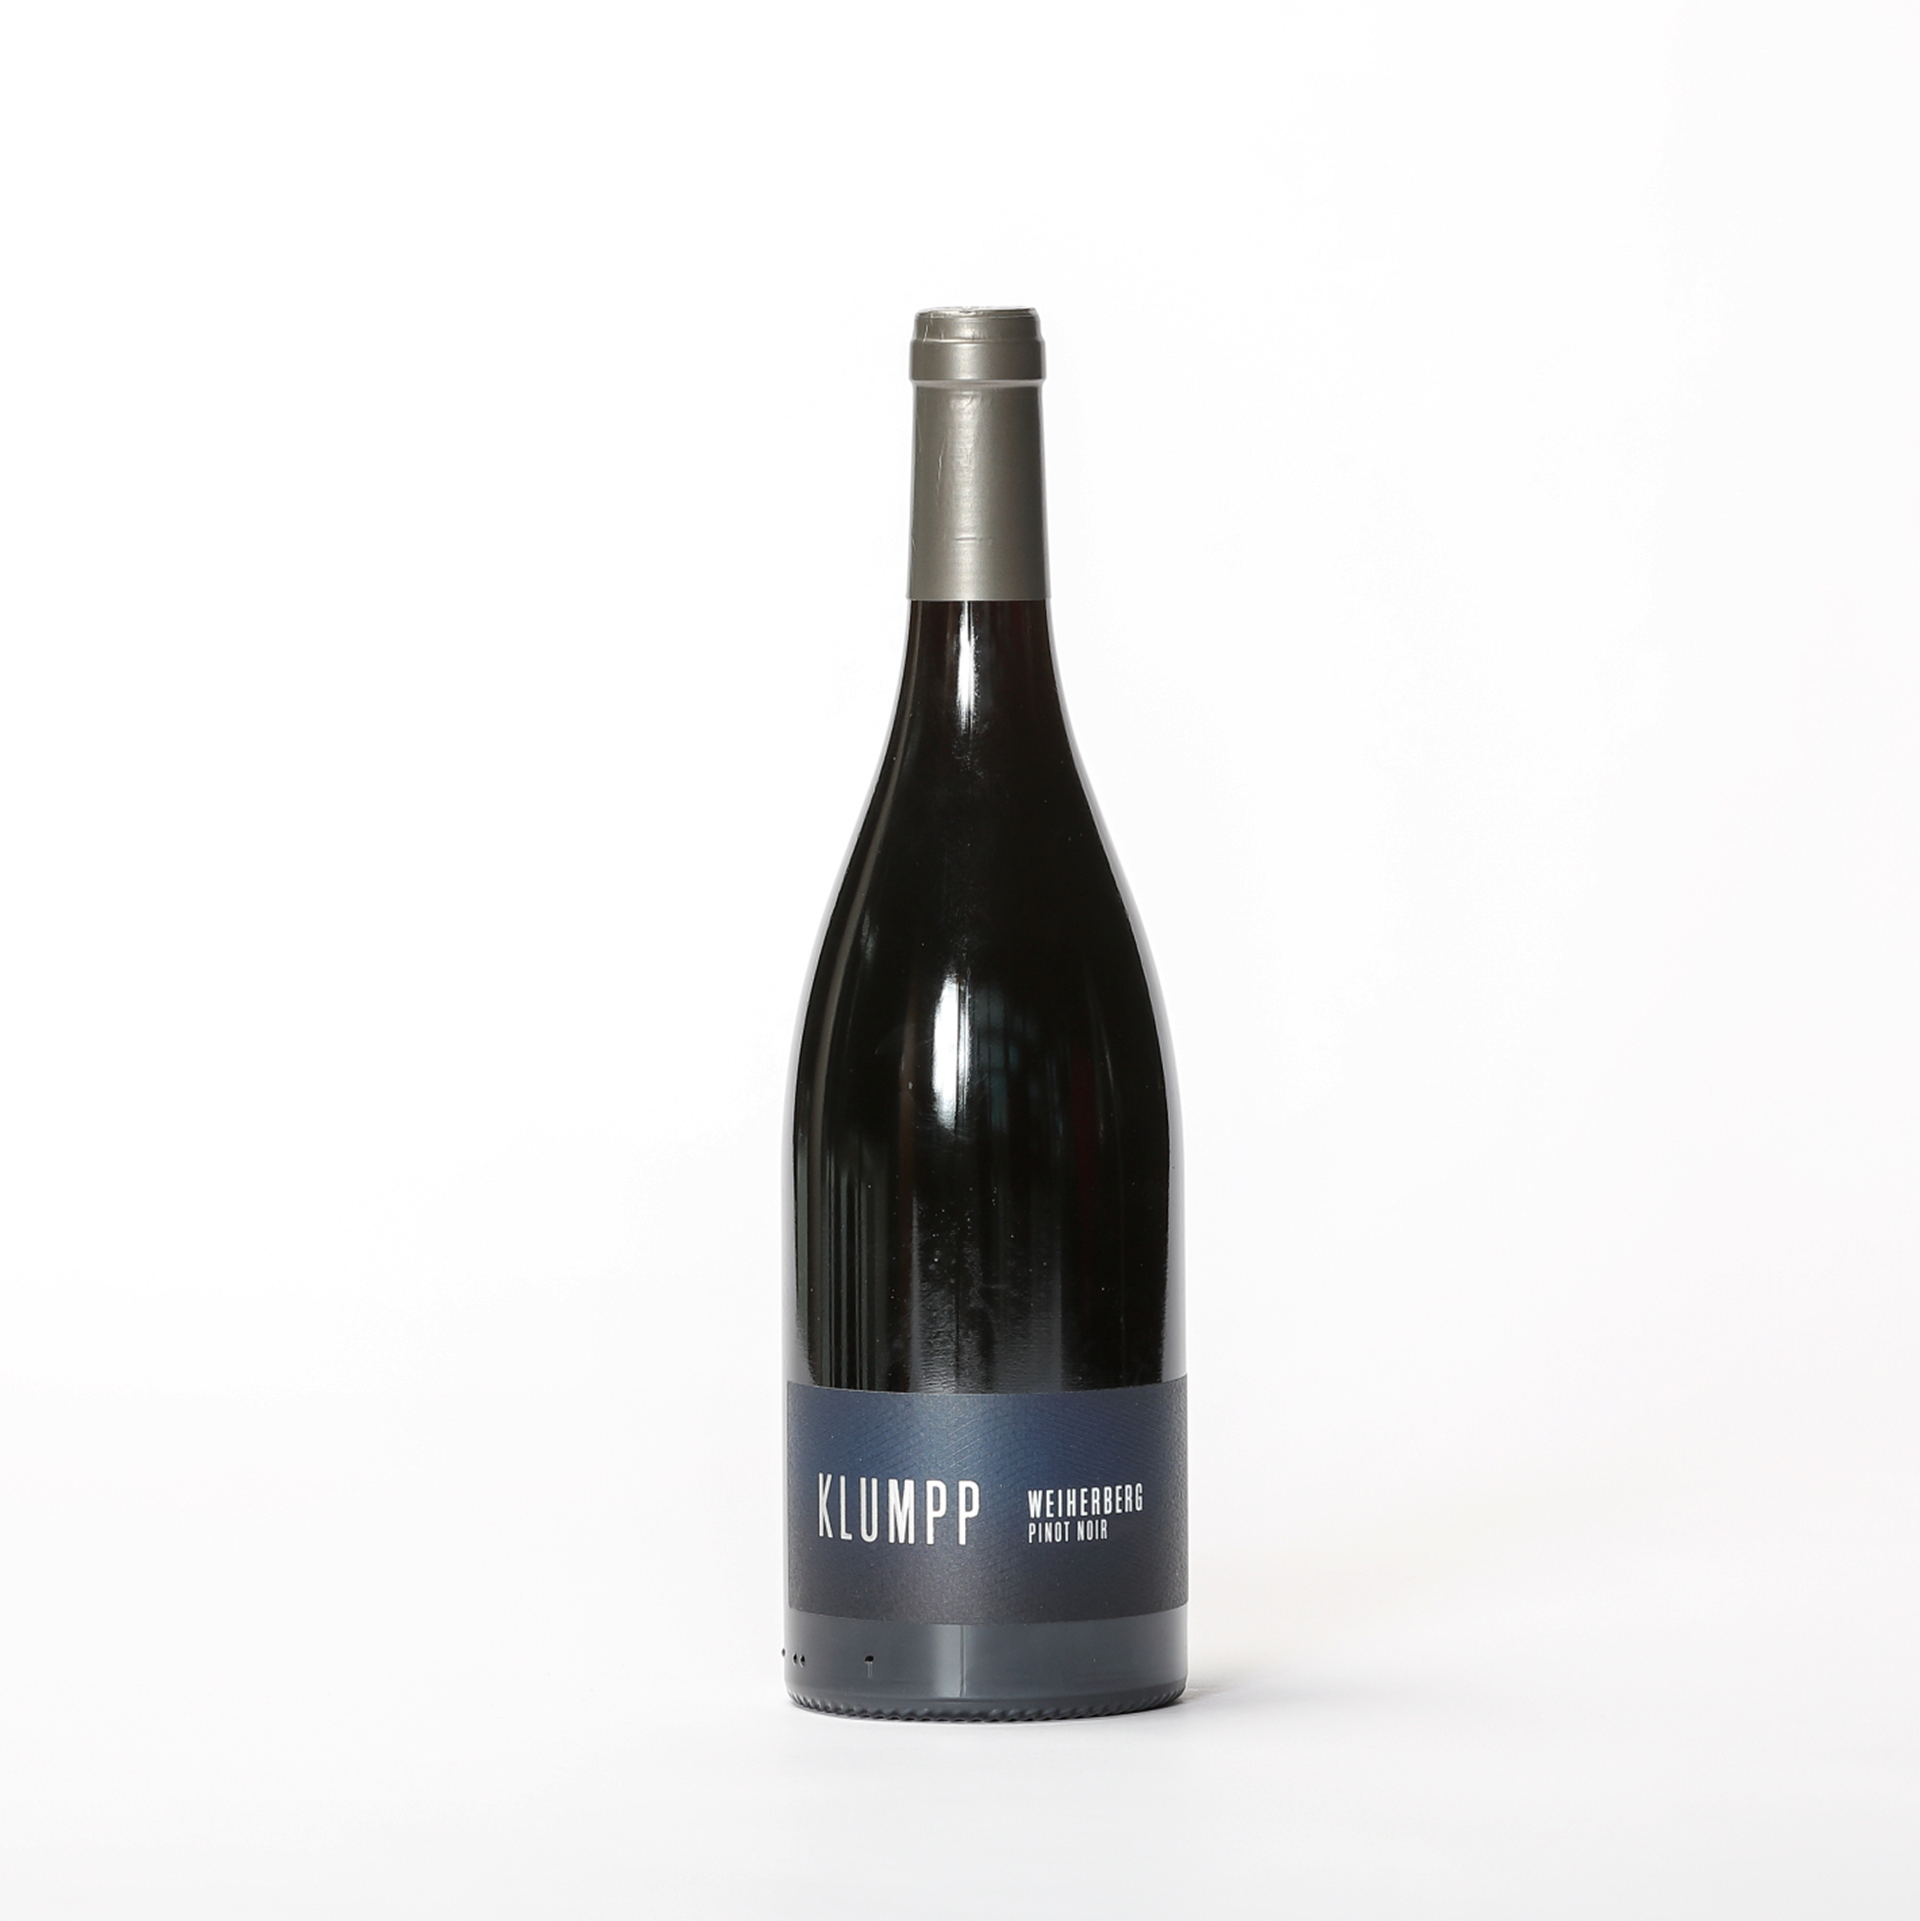 Produktbild Weiherberg Pinot Noir 2016 - Weingut Klumpp| DINZLER Kaffeerösterei